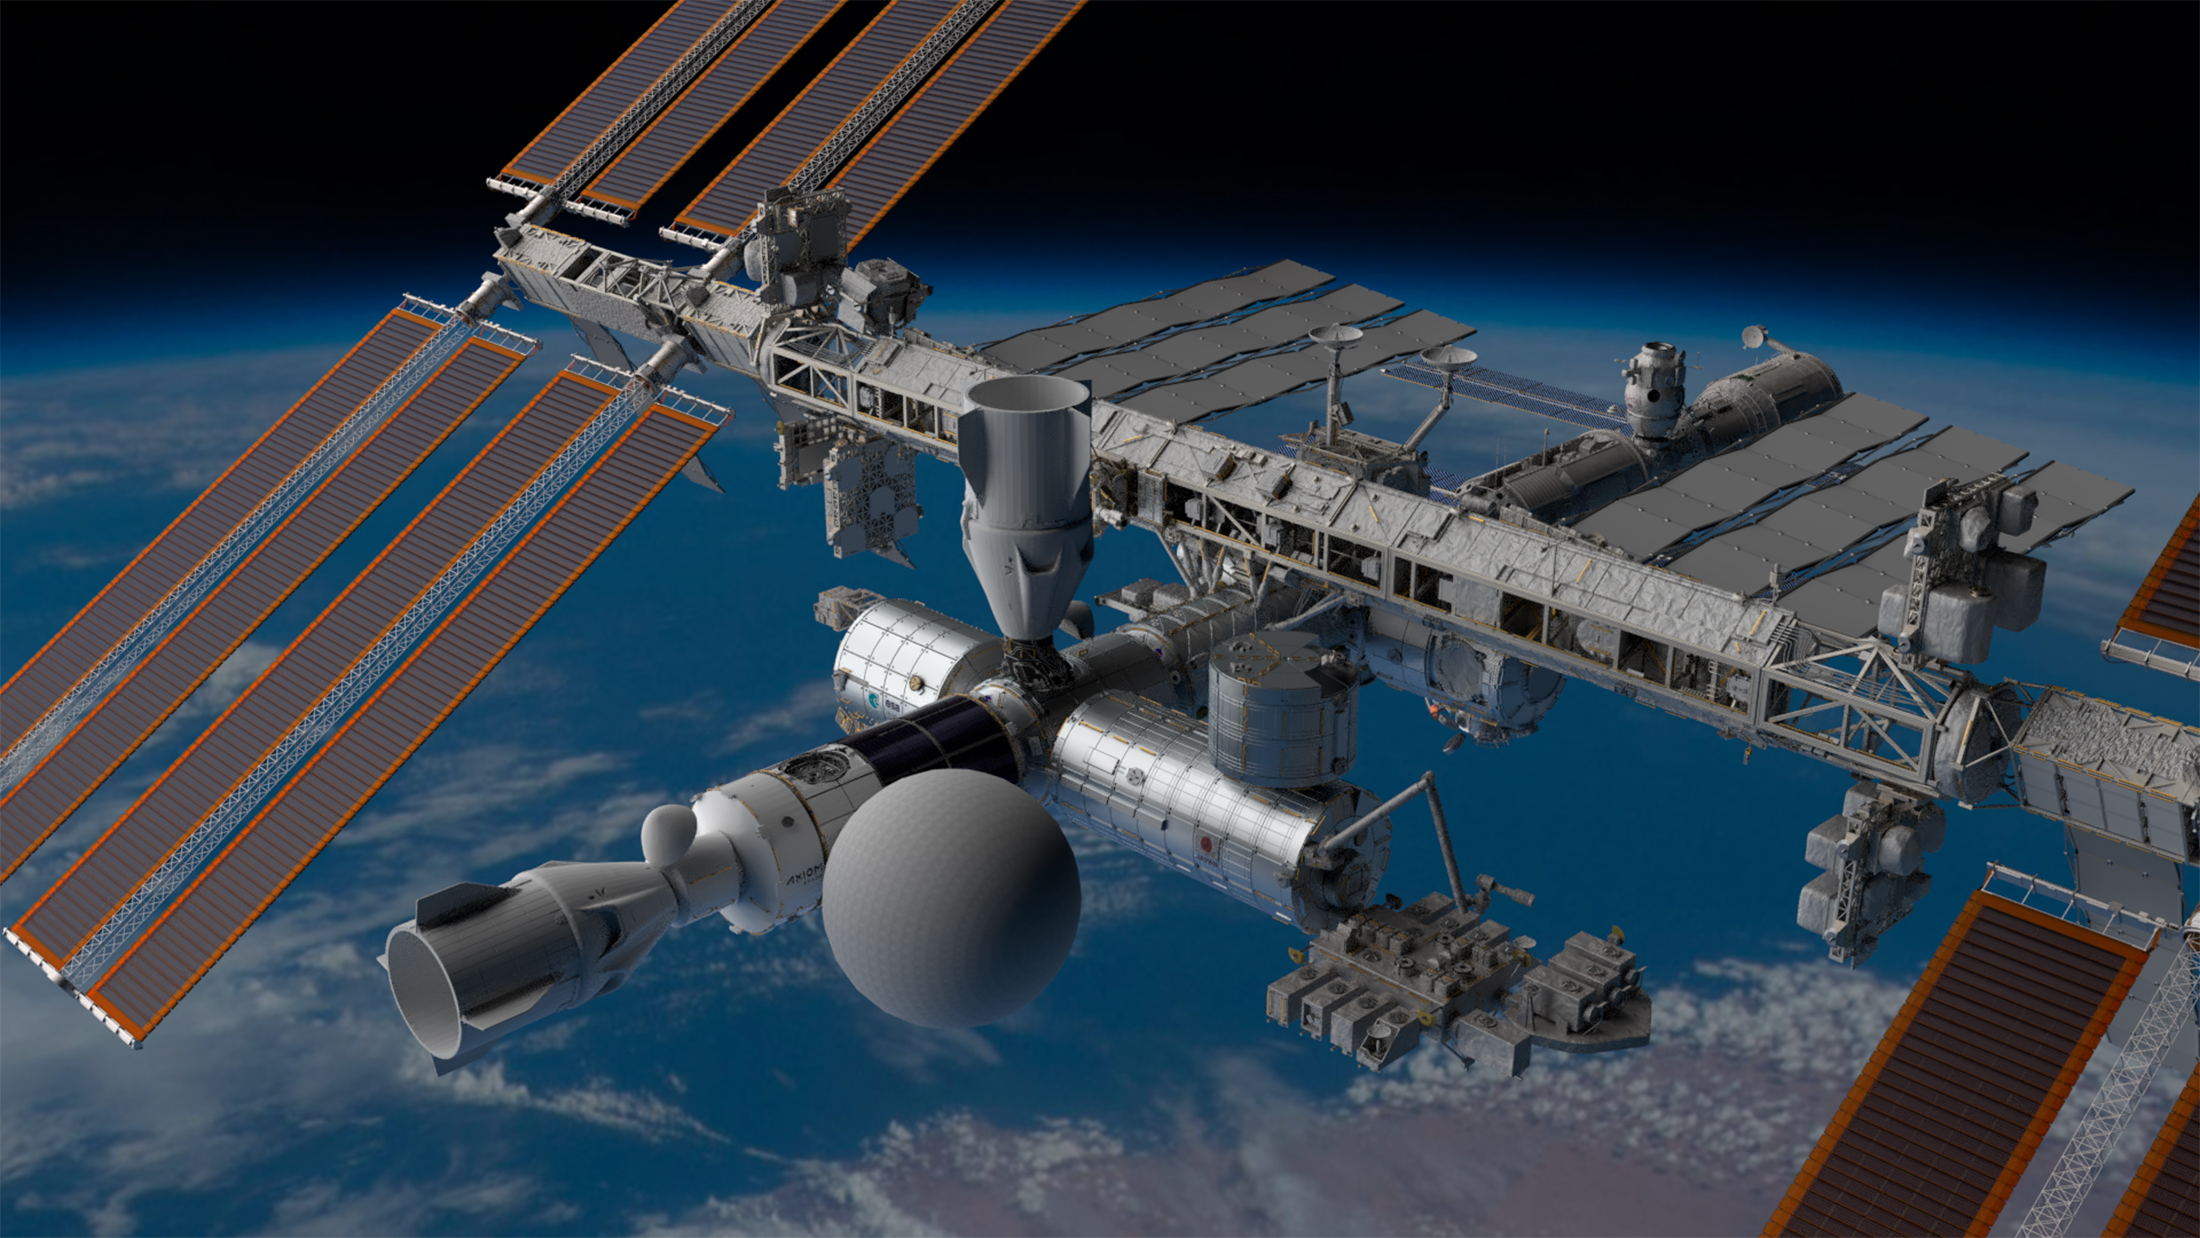 Au premier plan, le segment Axiom de la Station spatiale internationale avec le module gonflable SEE-1 (la grosse boule) qui fera office de lieu de divertissement. Le segment Axoim pourrait compter jusqu'à 6 modules et une coupole d'observation de la Terre. Les deux premiers modules de ce segment, le nœud de jonction Node 1 (AxN1) et le module d'habitation (AxH), seront réalisés par Thales Alenia Space. © Space Entertainment Enterprise